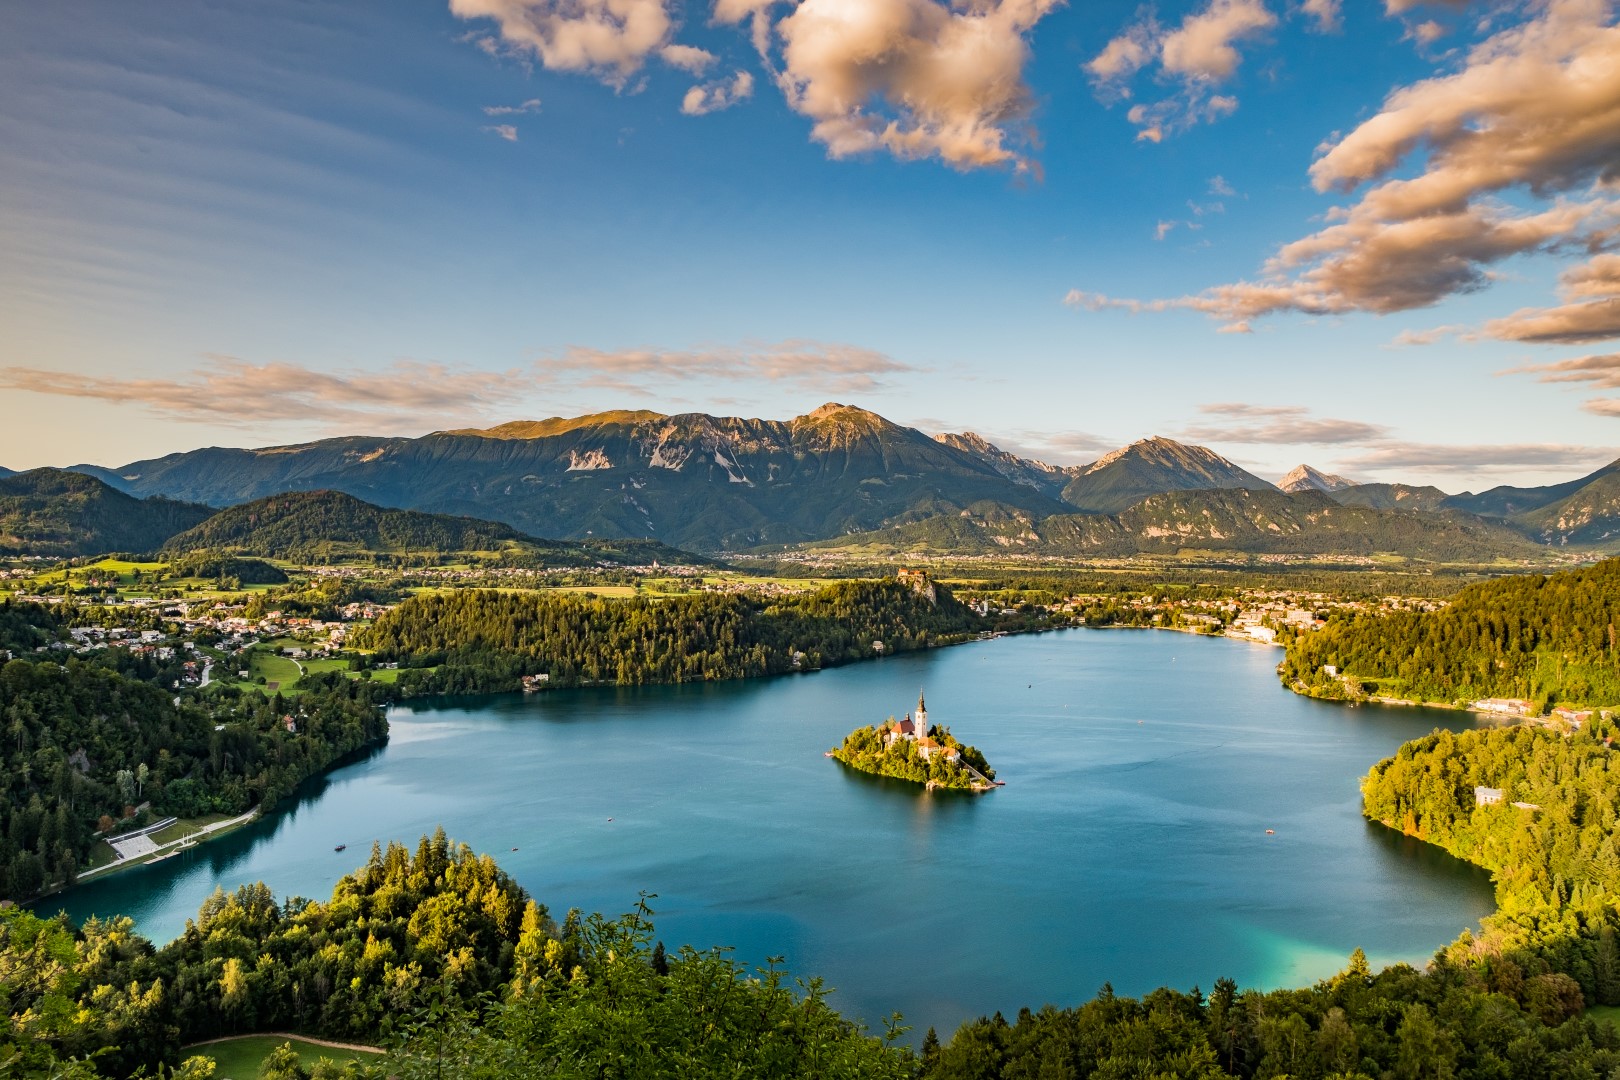 Slovinsko - ukrytý ráj mezi mořem a Alpami